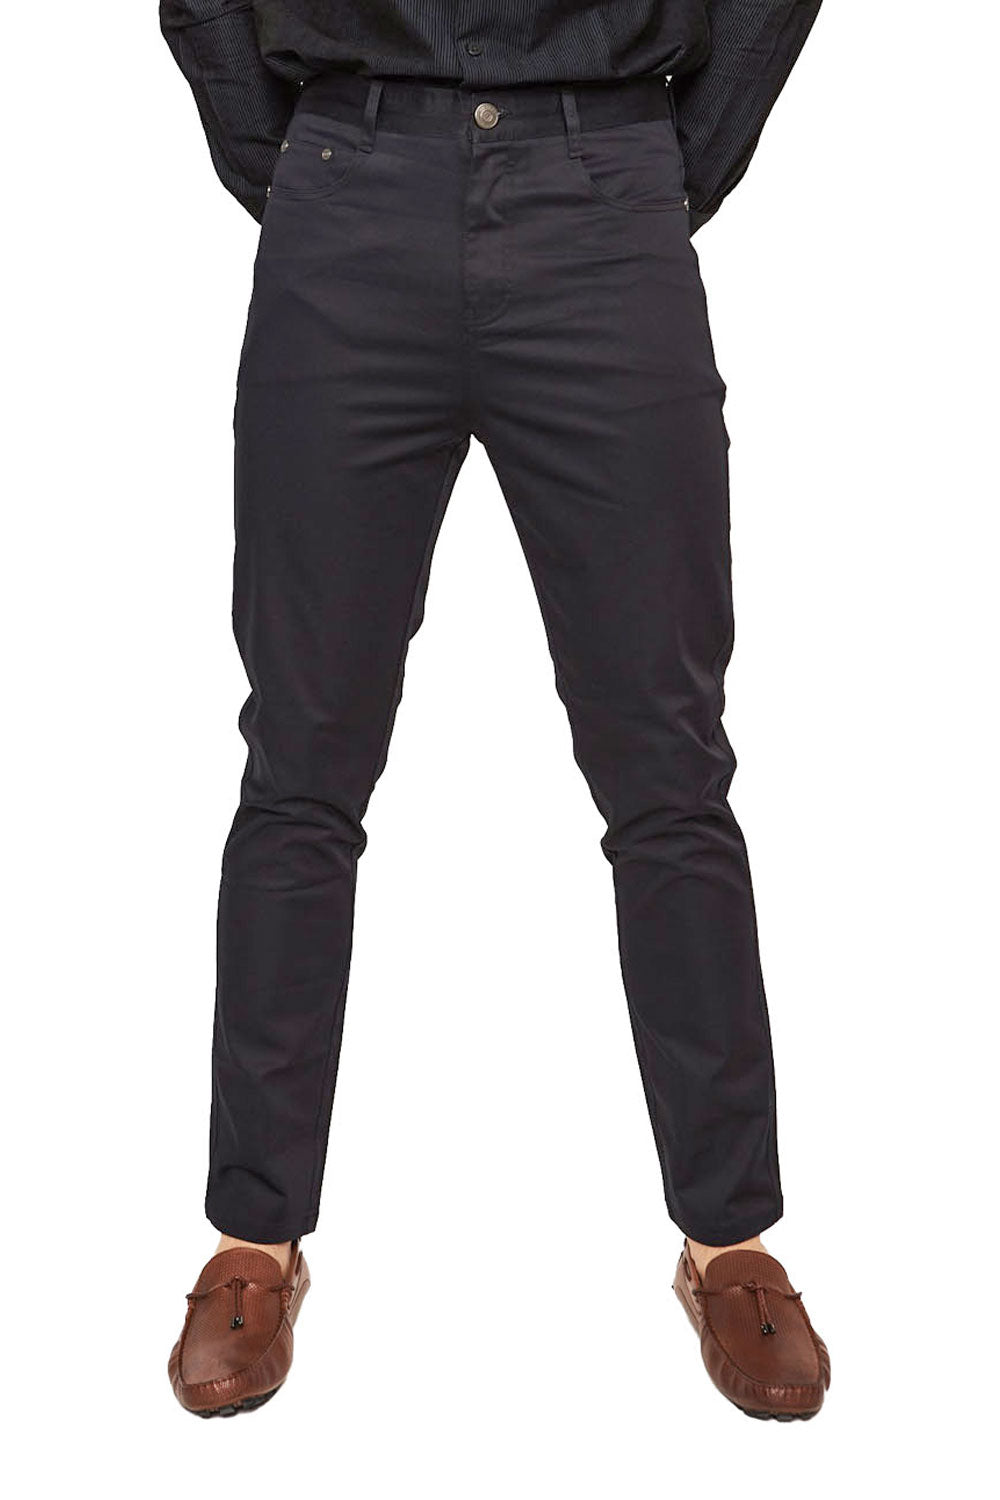 Barabas Men's Solid Color Front Button Fasten Classic Fit Pants B2073  BLACK